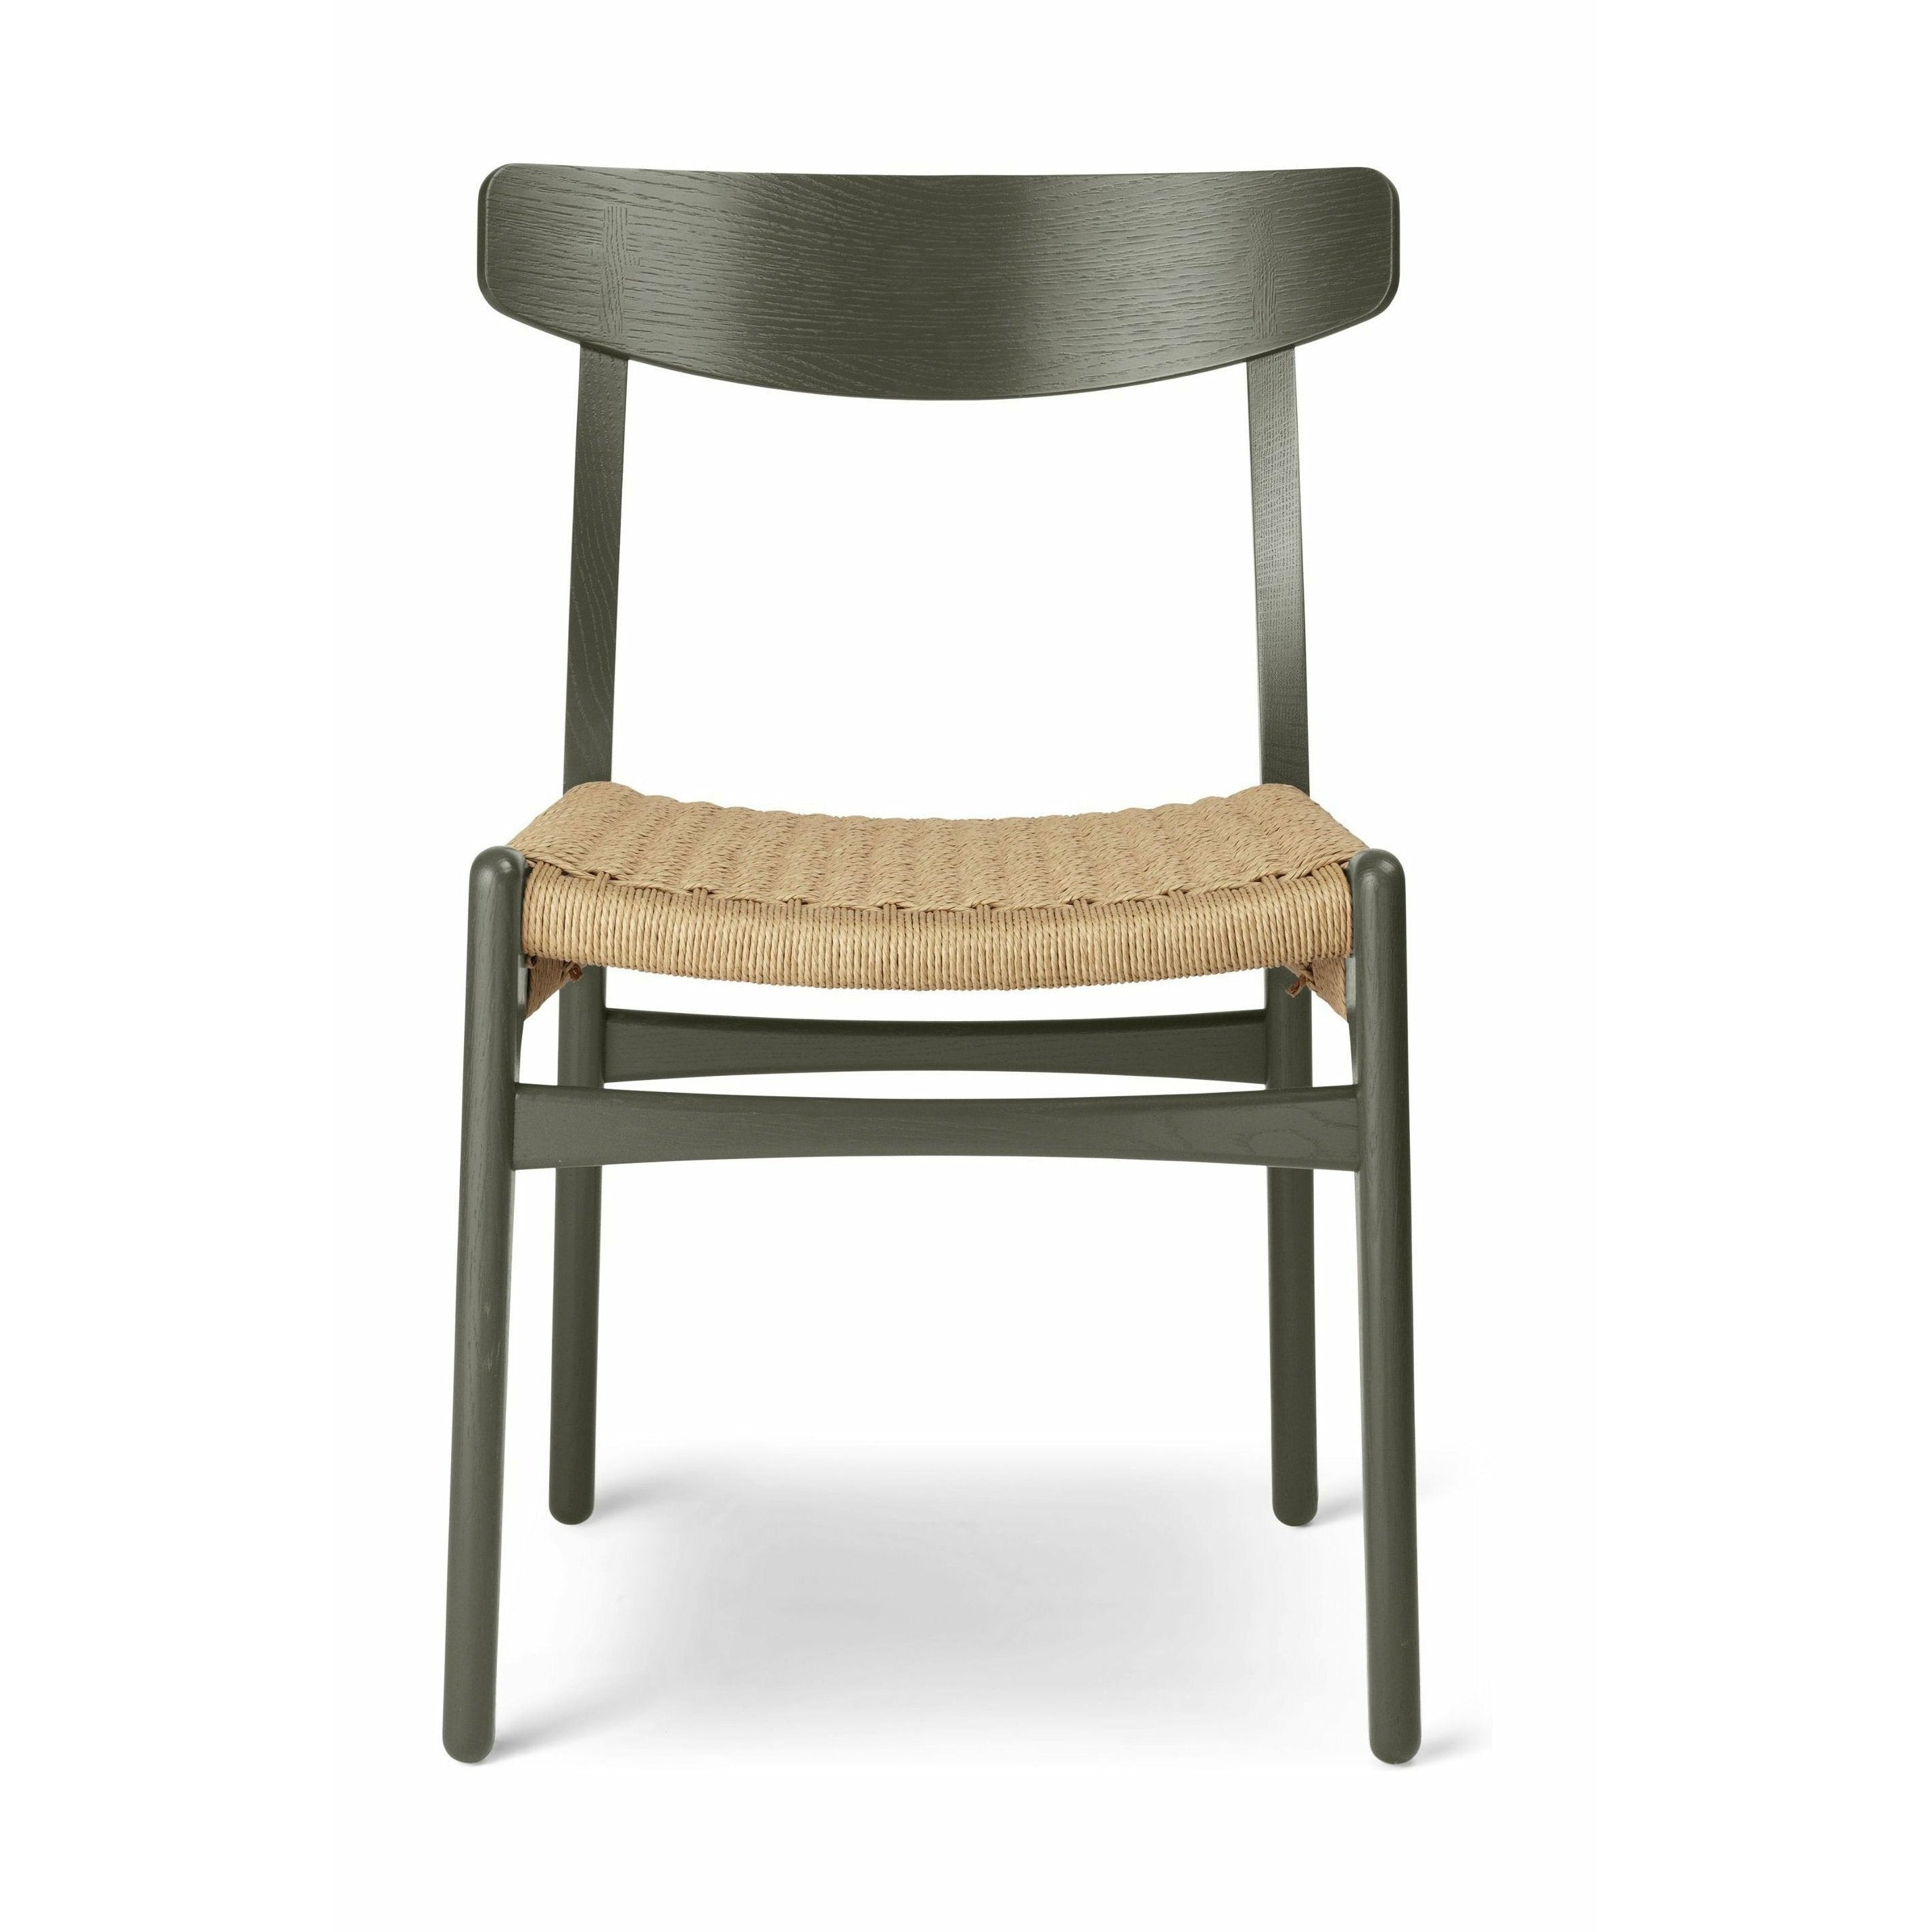 Carl Hansen CH23 -stol ek, tånggrön/naturlig sladd